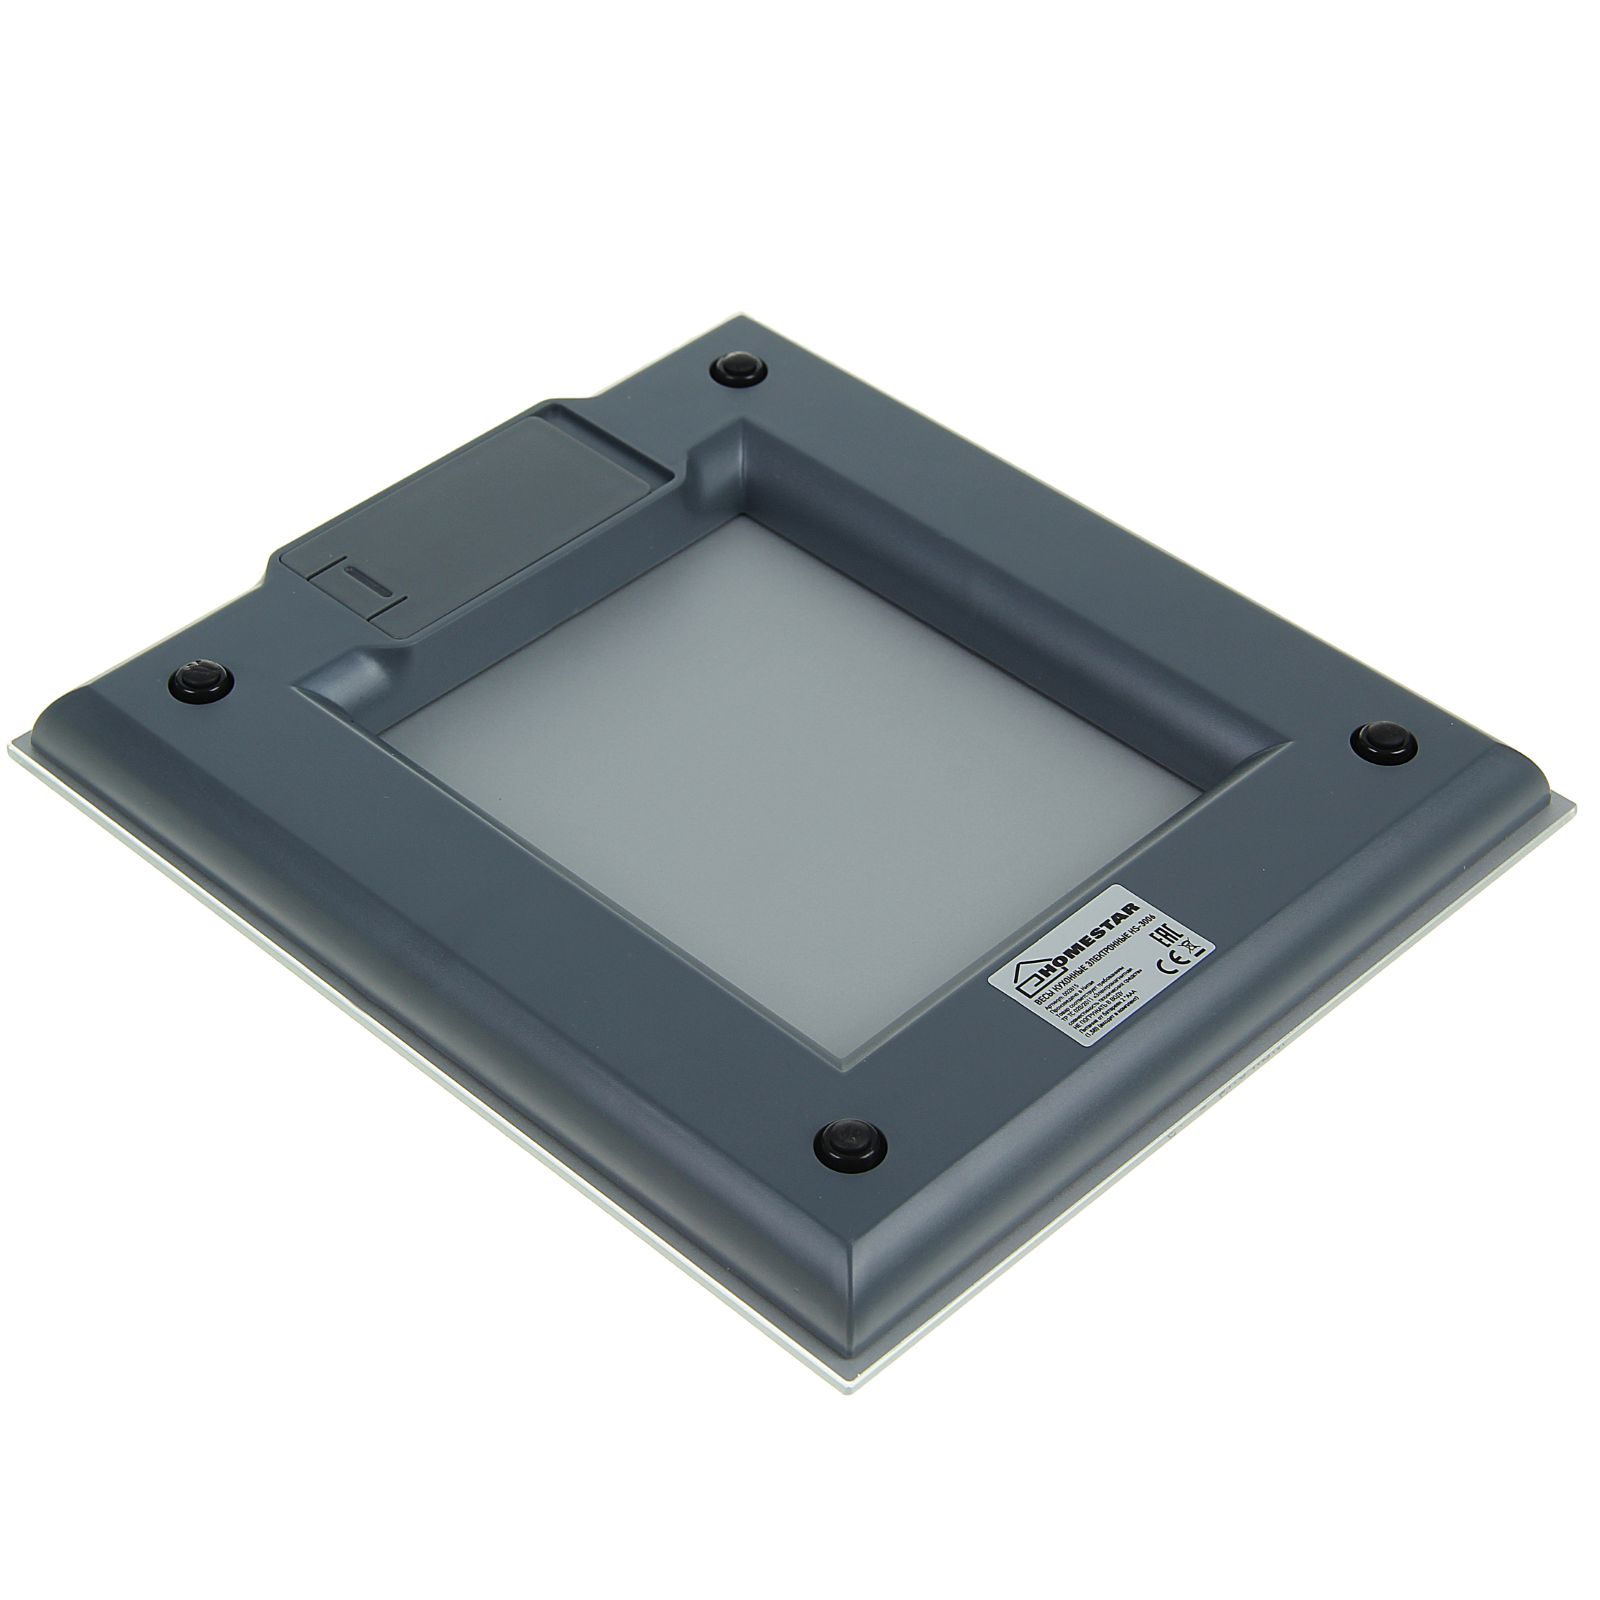 Весы кухонные Luazon Home HS-3006 электронные до 5 кг серебристые - фото 3